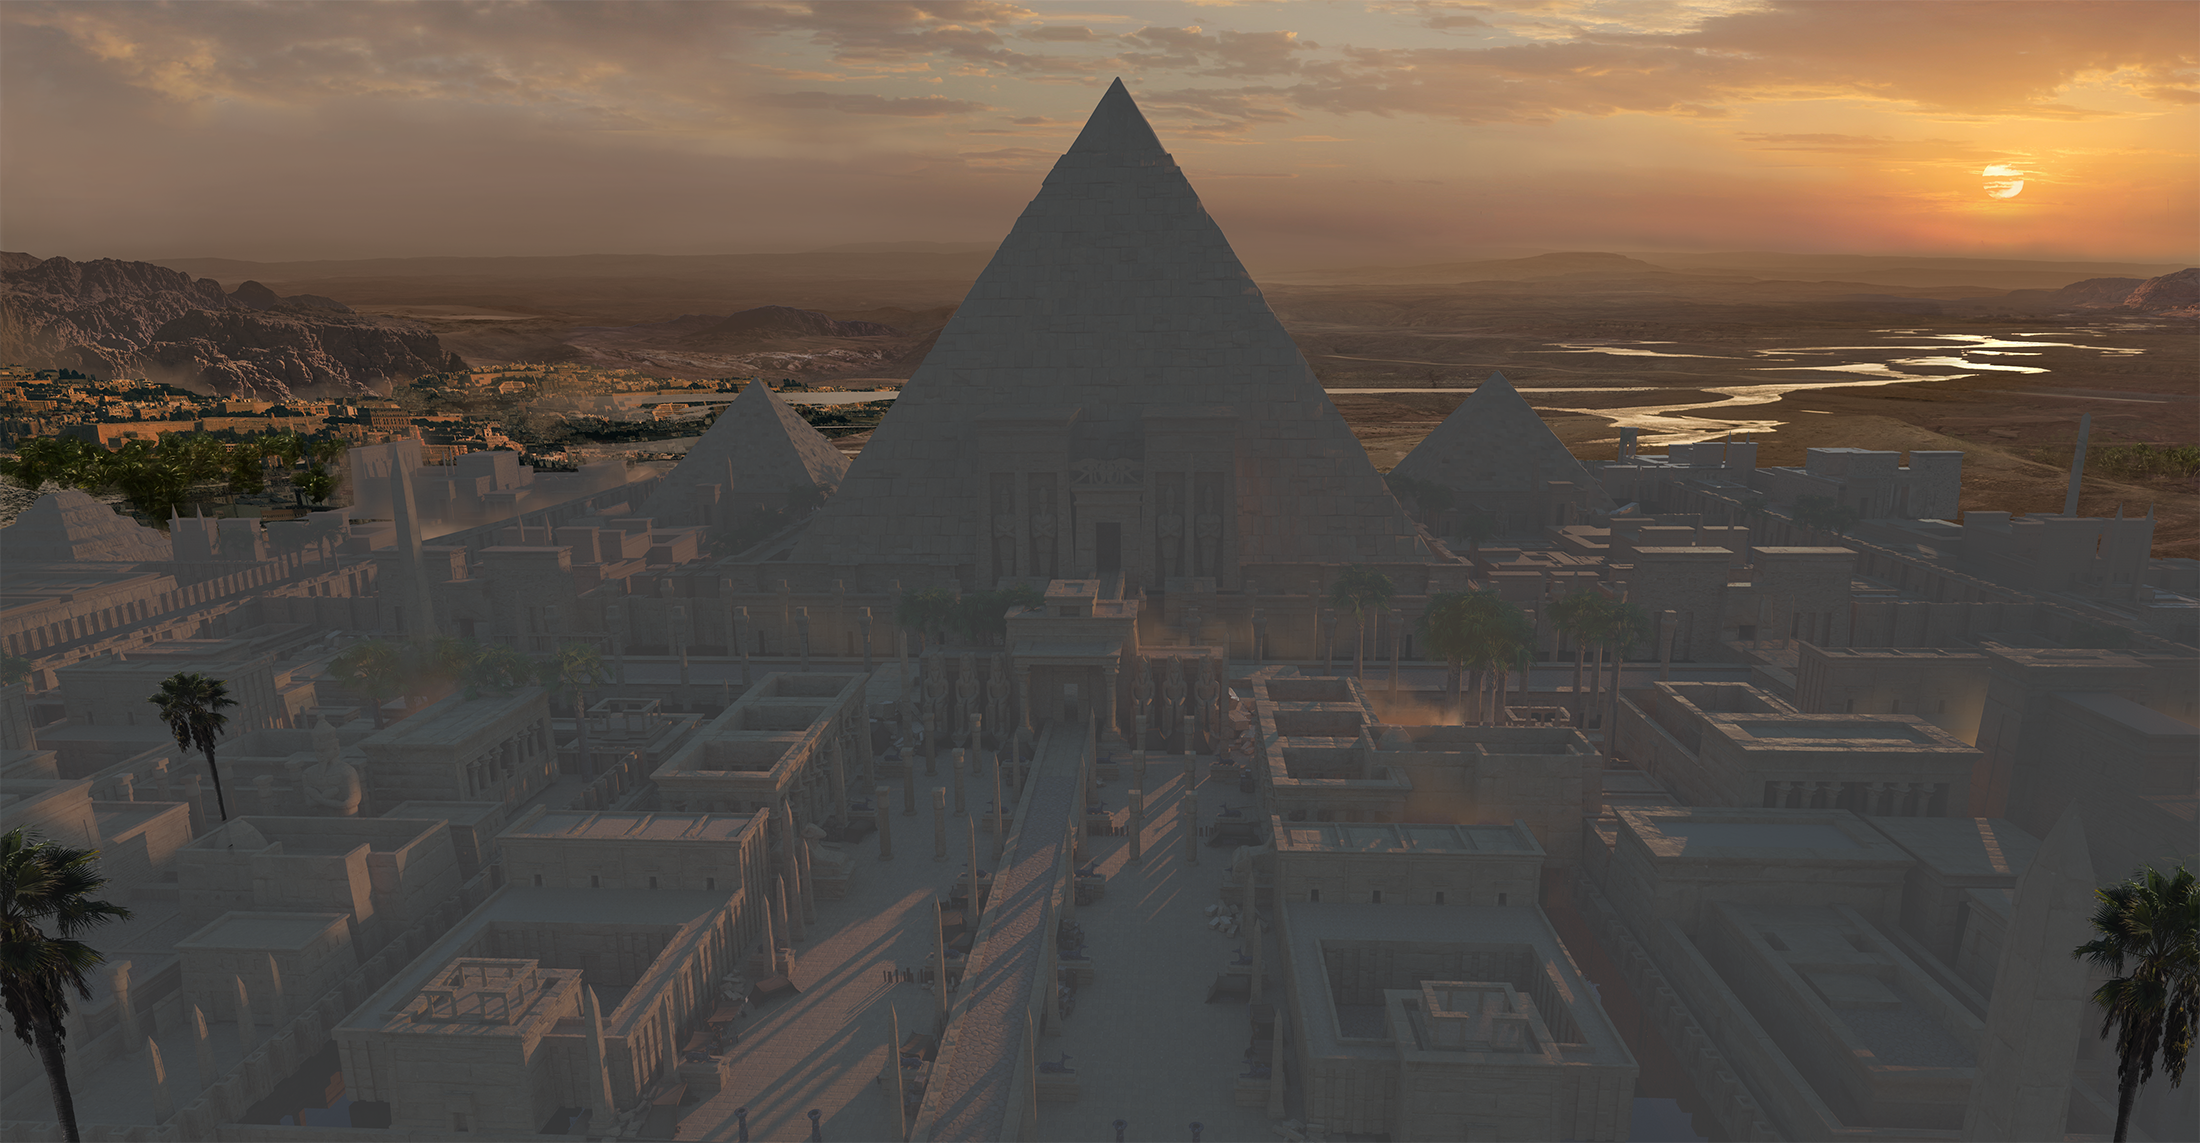 859 埃及金字塔古城建筑群相关3D模型合集 Kitbash3d Egypt